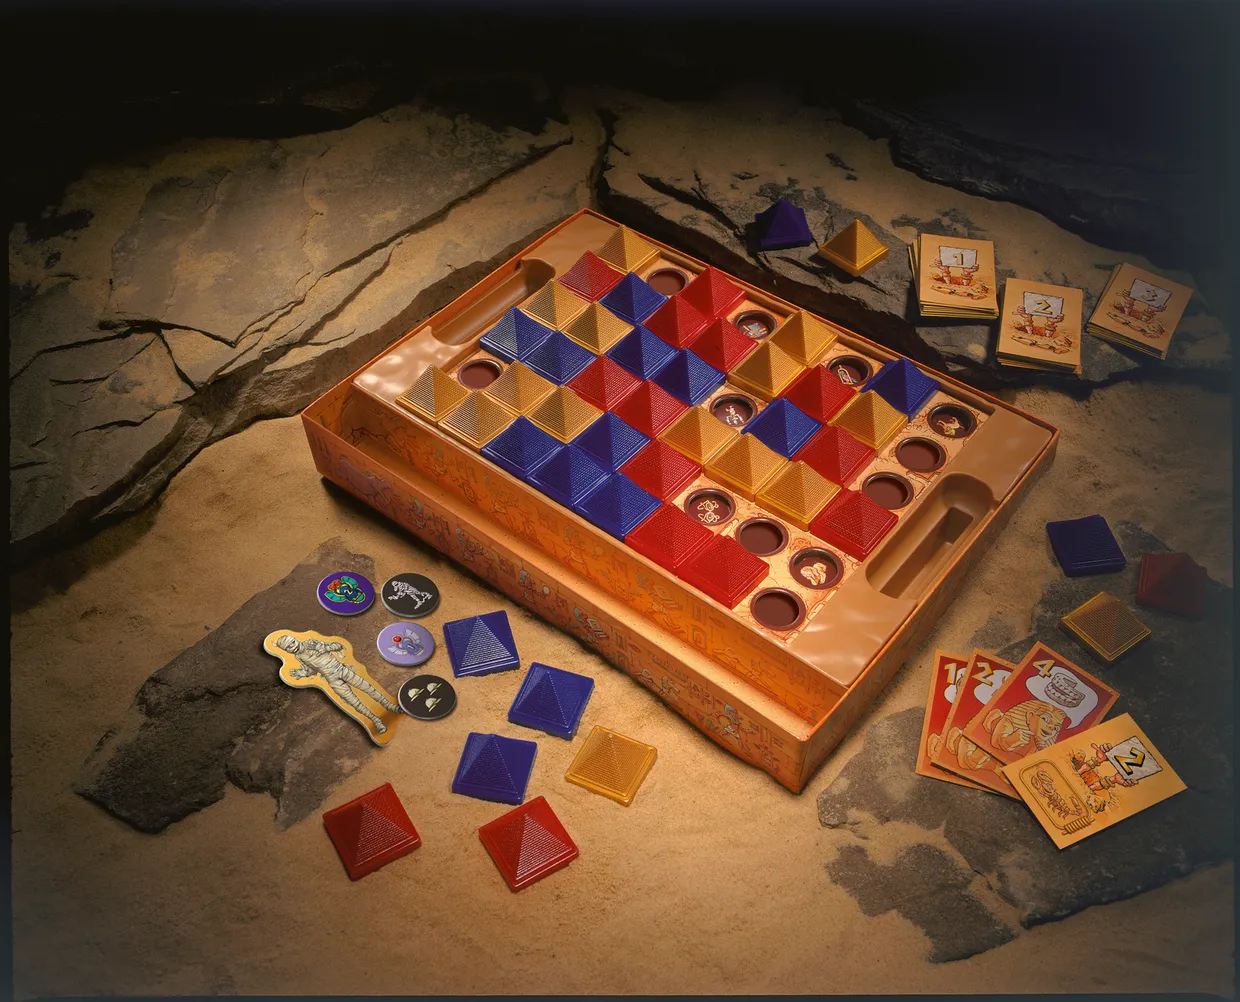 Ramses  bordspel